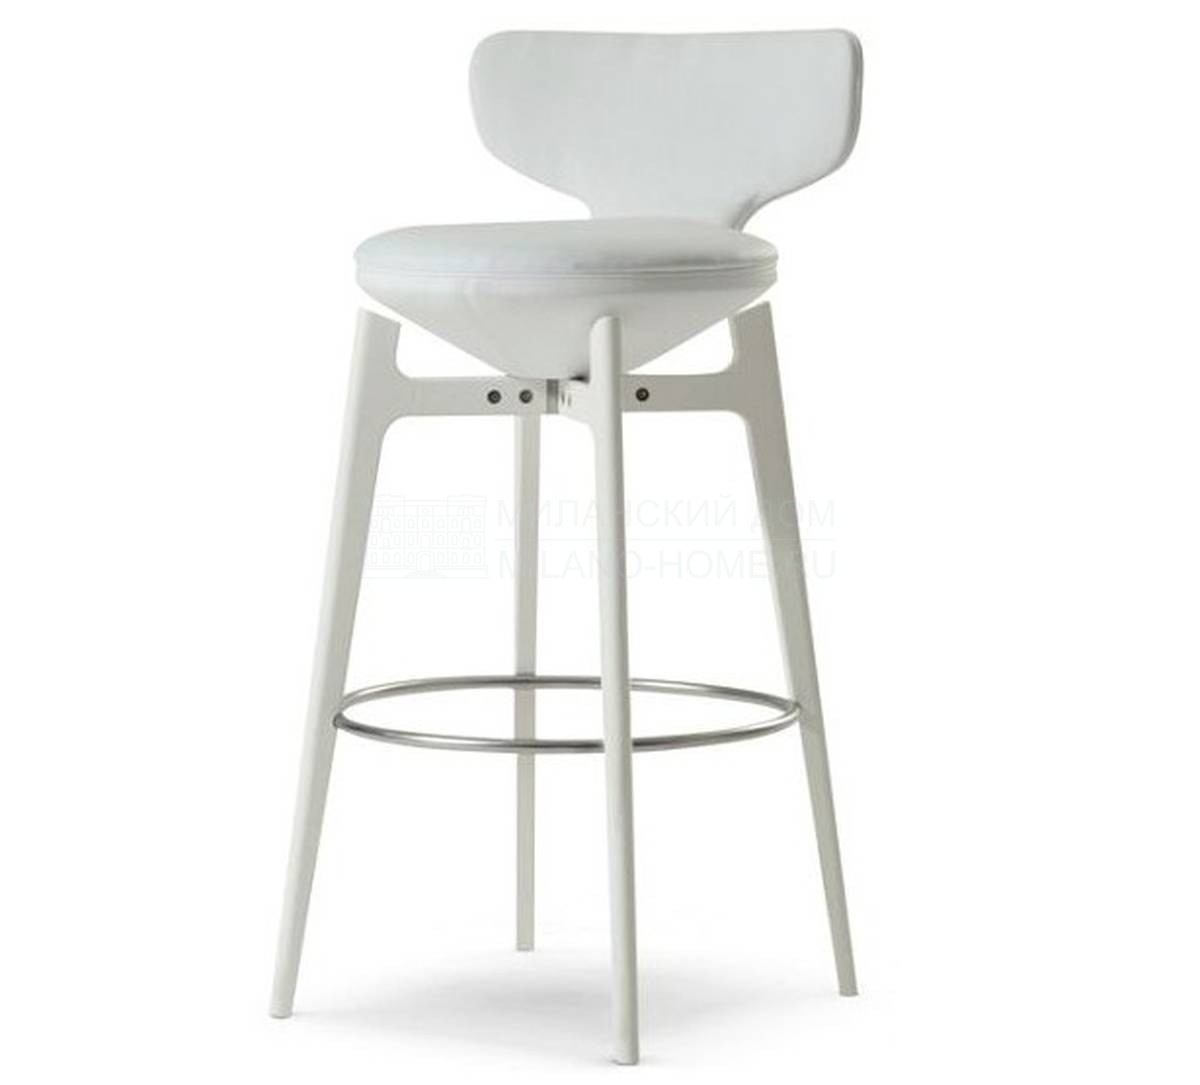 Барный стул U-Turn large stool with back из Франции фабрики ROCHE BOBOIS